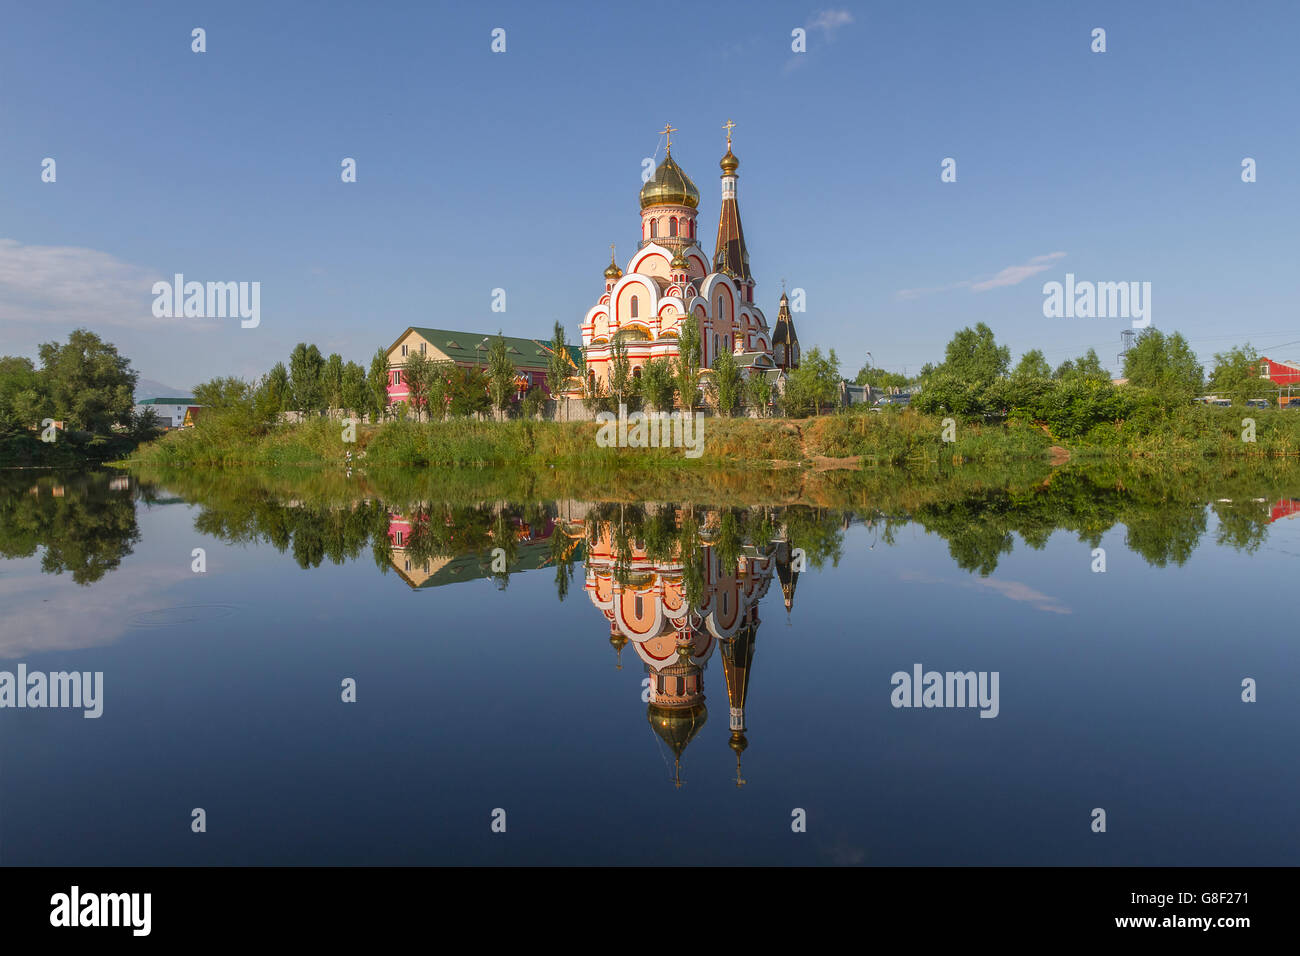 Chiesa russa ortodossa in Almaty, Kazakhstan, noto anche come Chiesa di esaltazione della Santa Croce, e il suo riflesso nell'acqua. Foto Stock